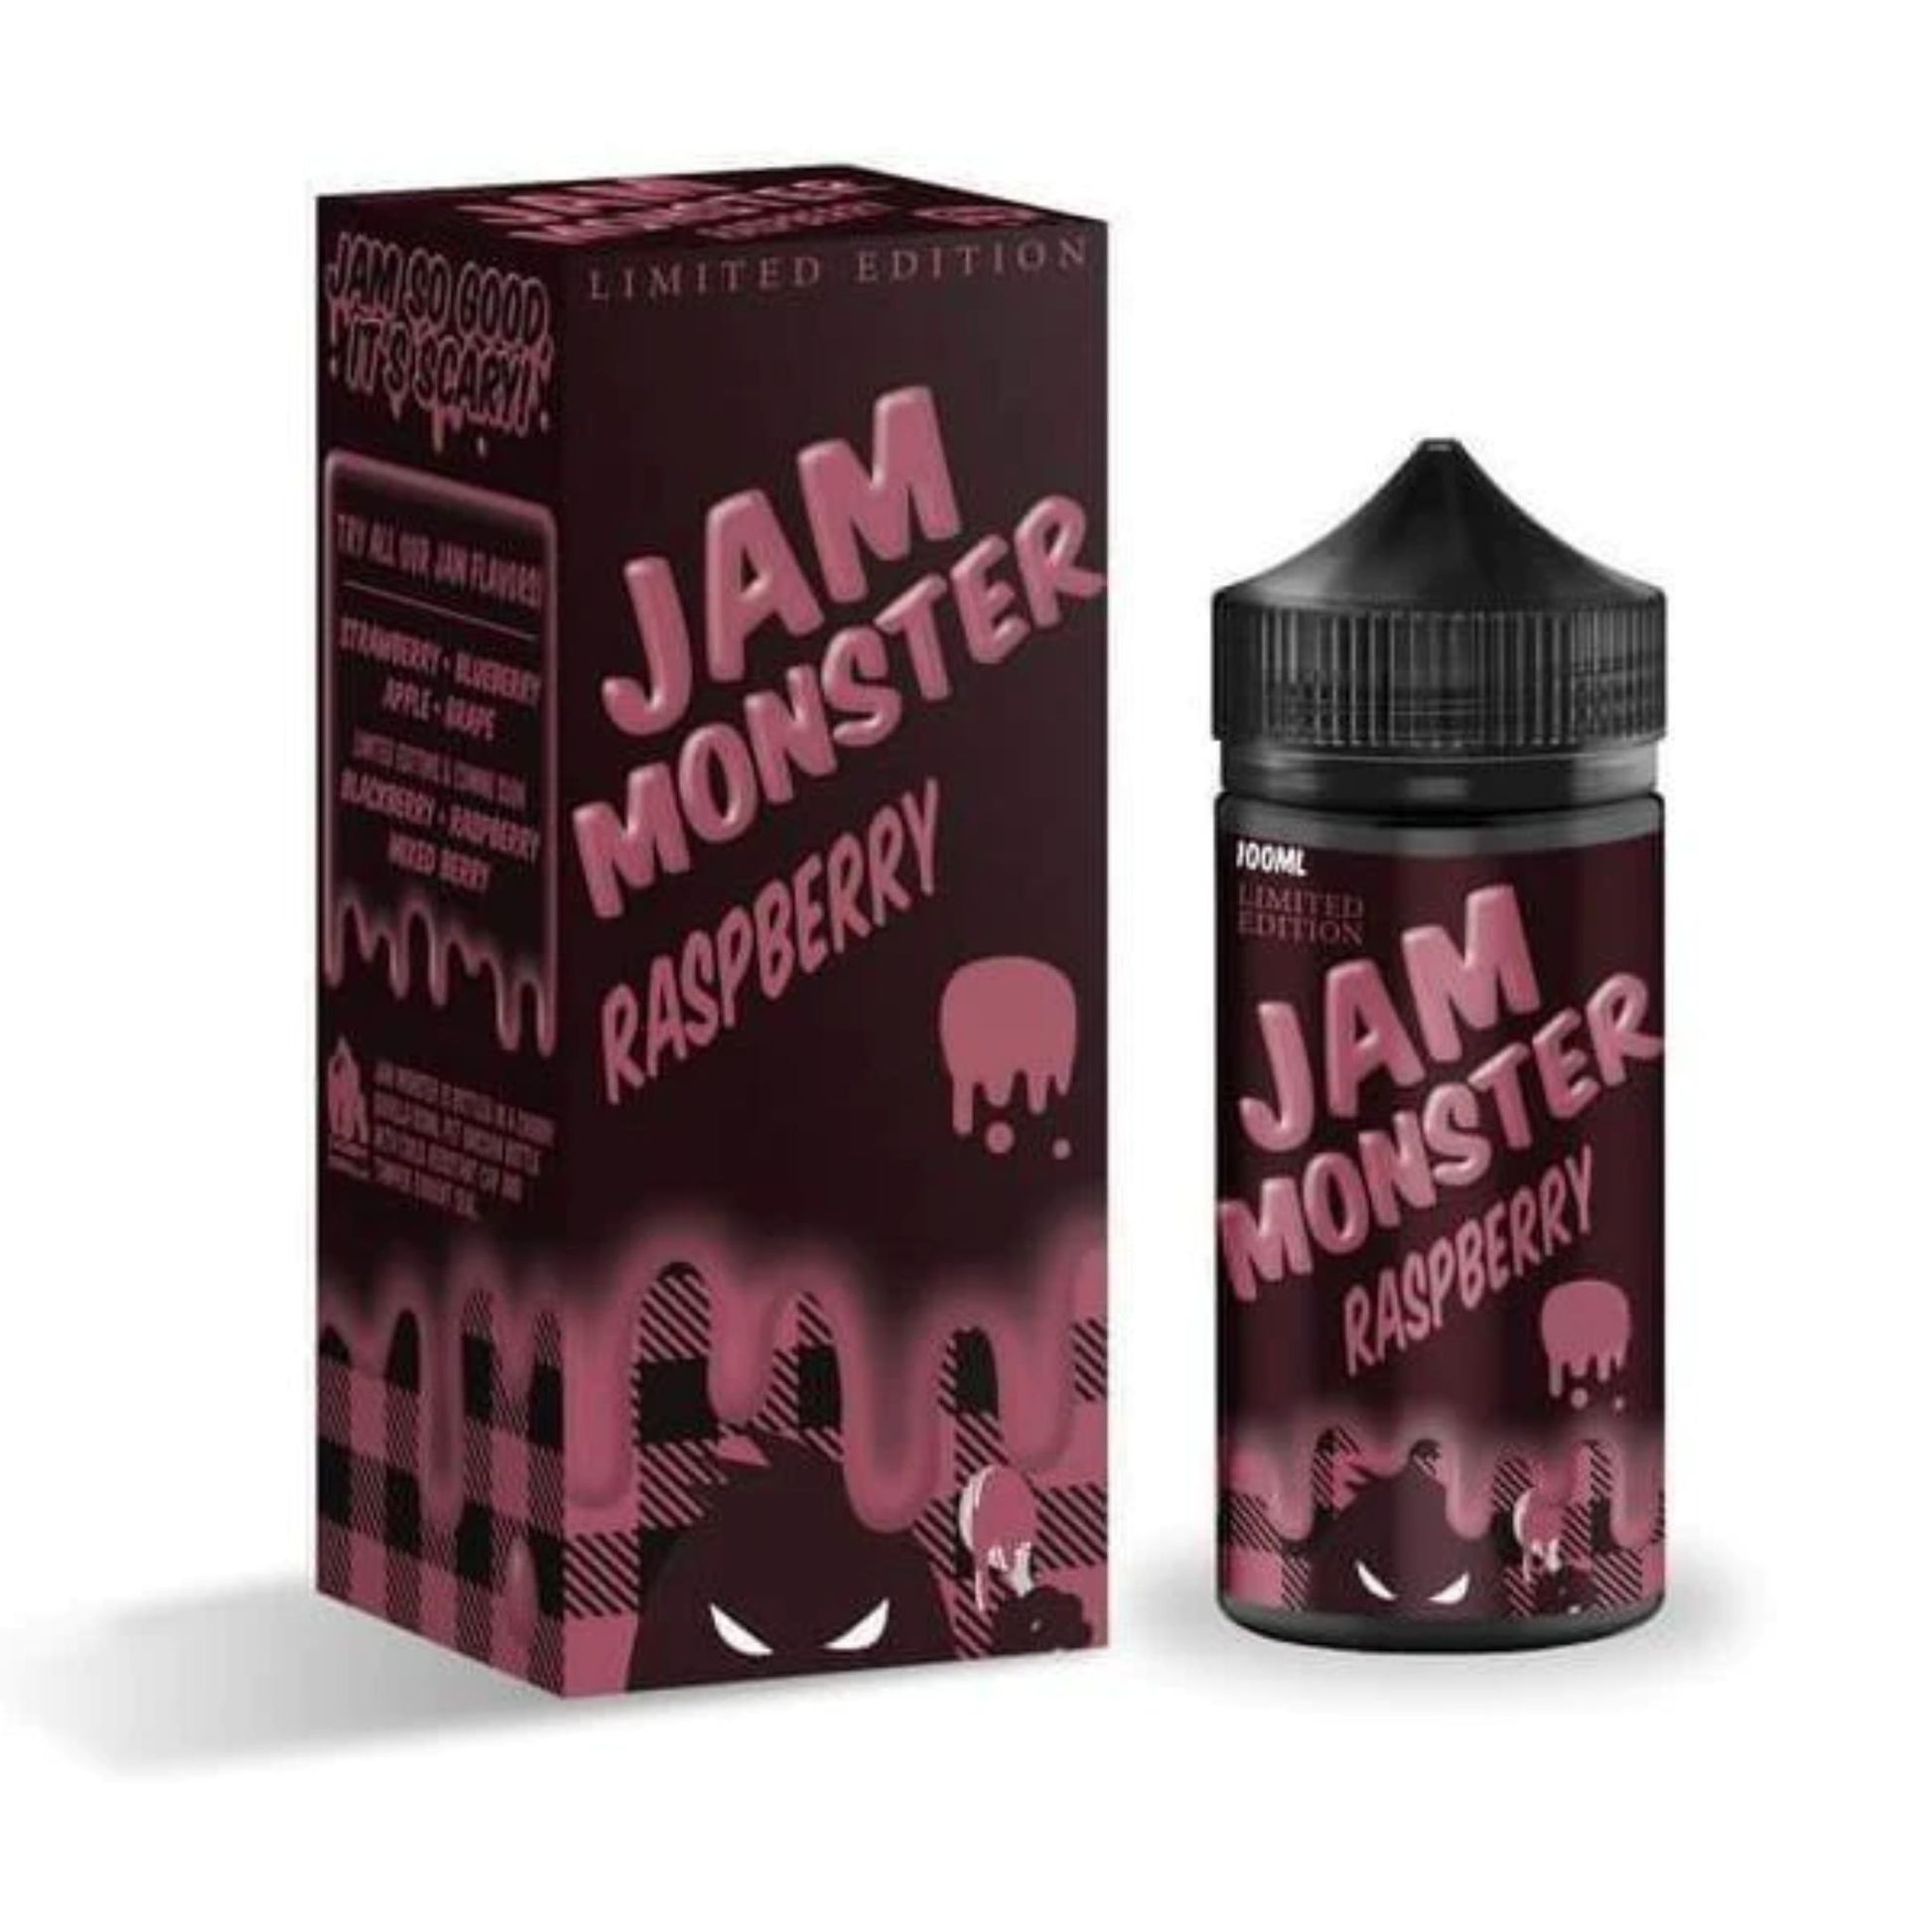 jam monster raspberry e-liquid 100ml bottle and box